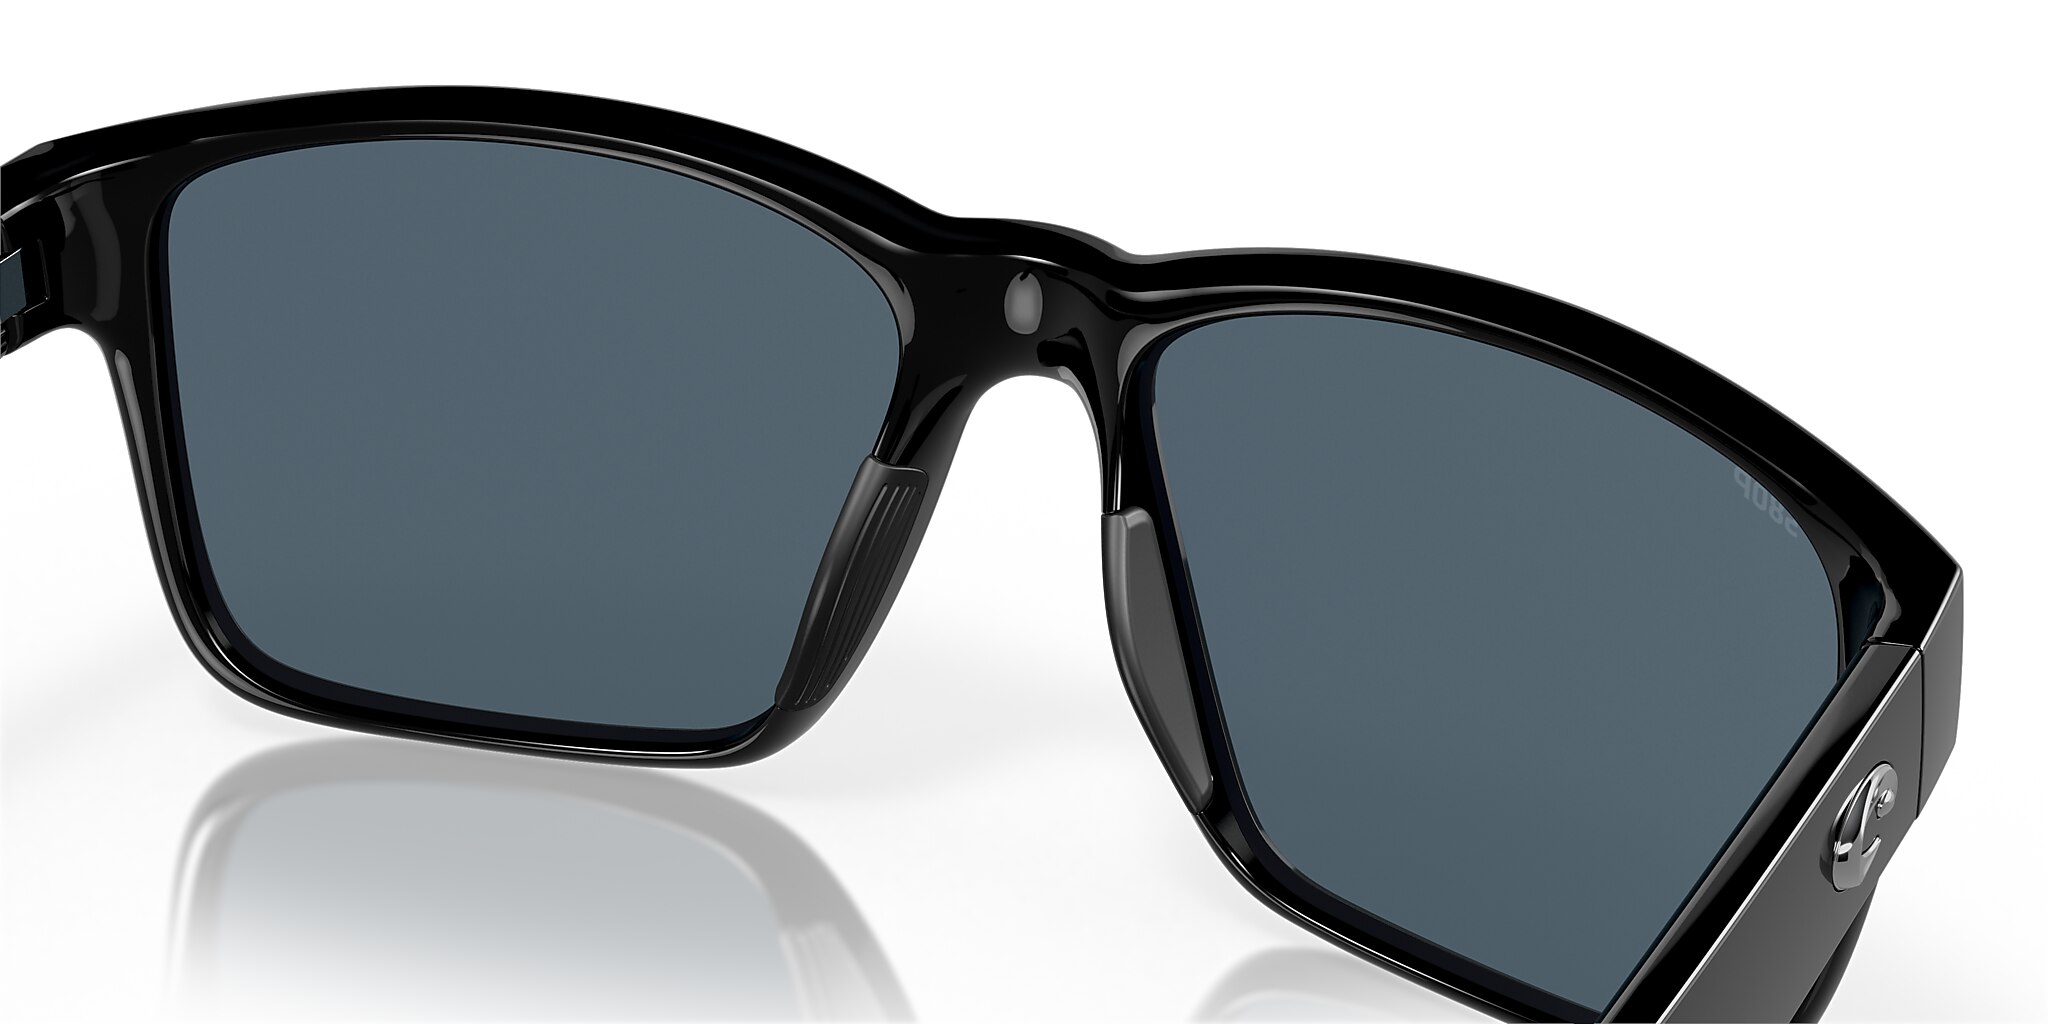 Paunch Polarized Sunglasses in Gray | Costa Del Mar®